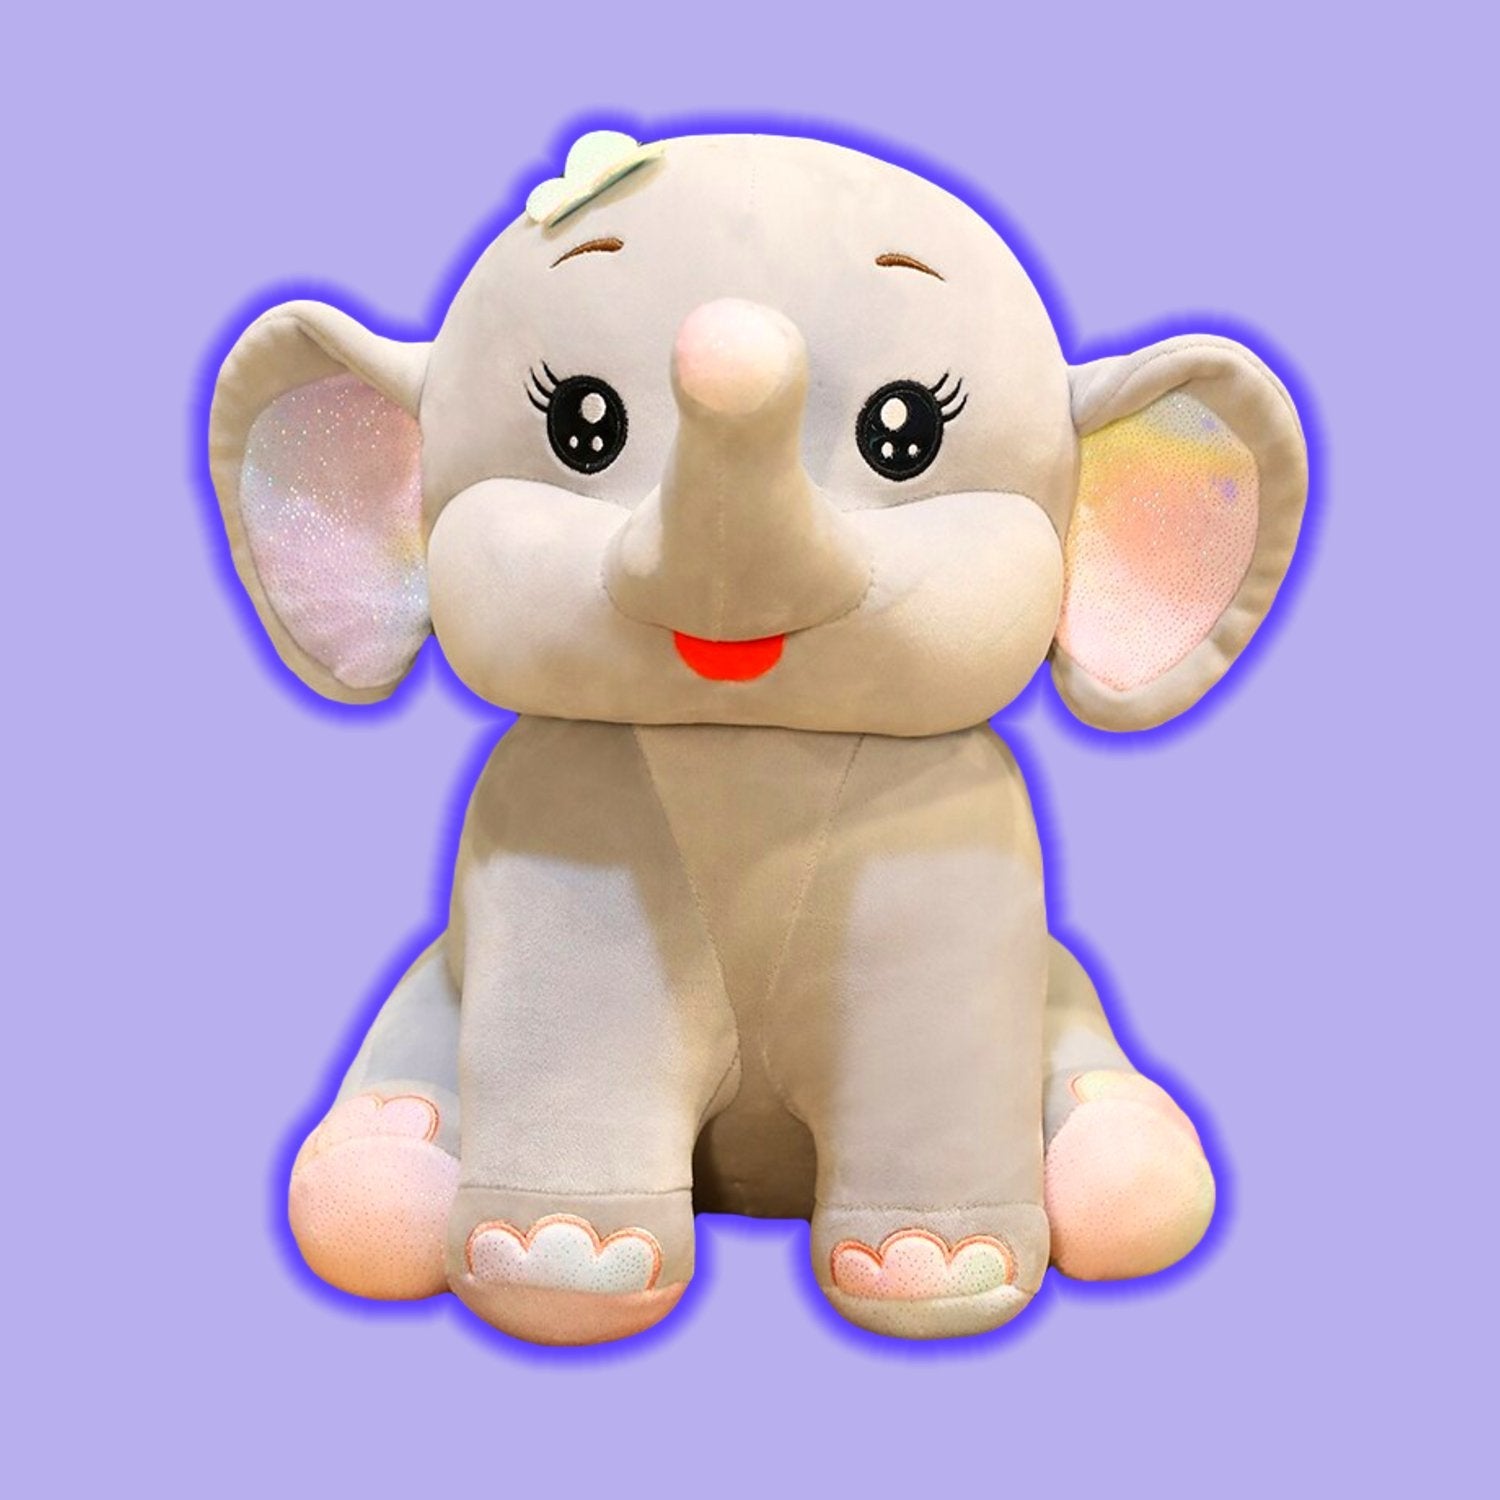 Elephant With Cute Giant Ears